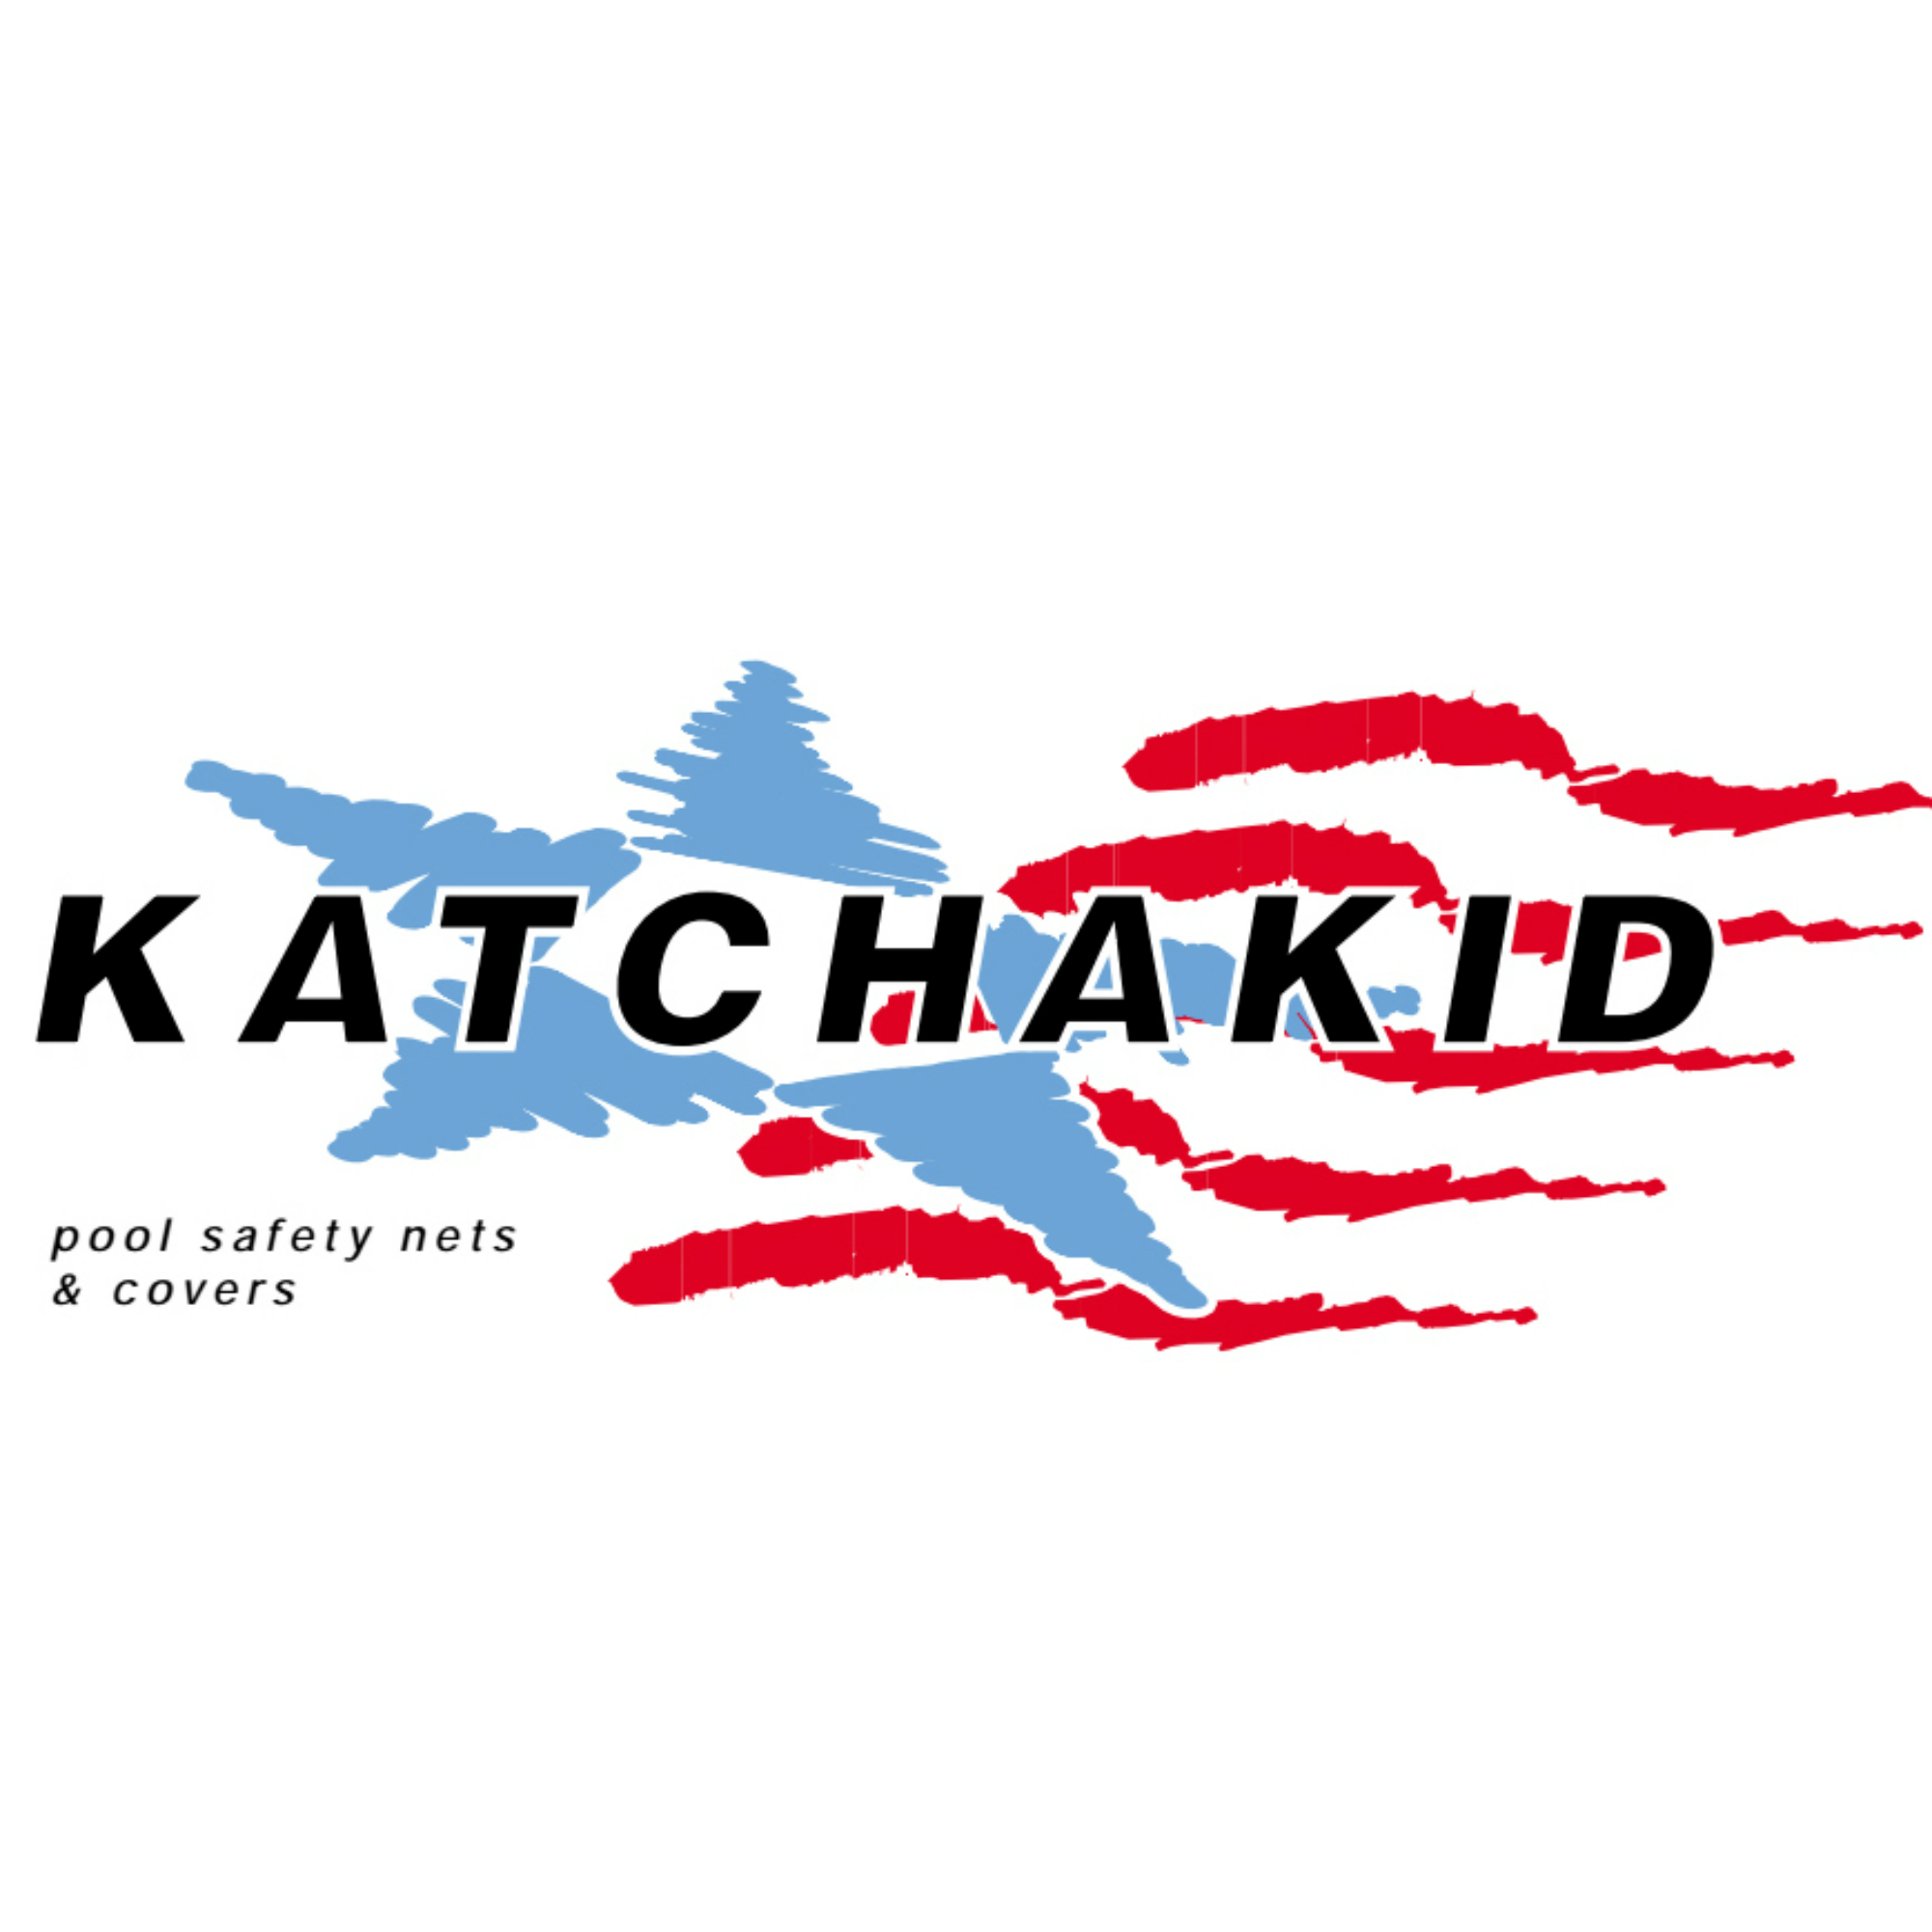 Katchakid, Inc. Logo